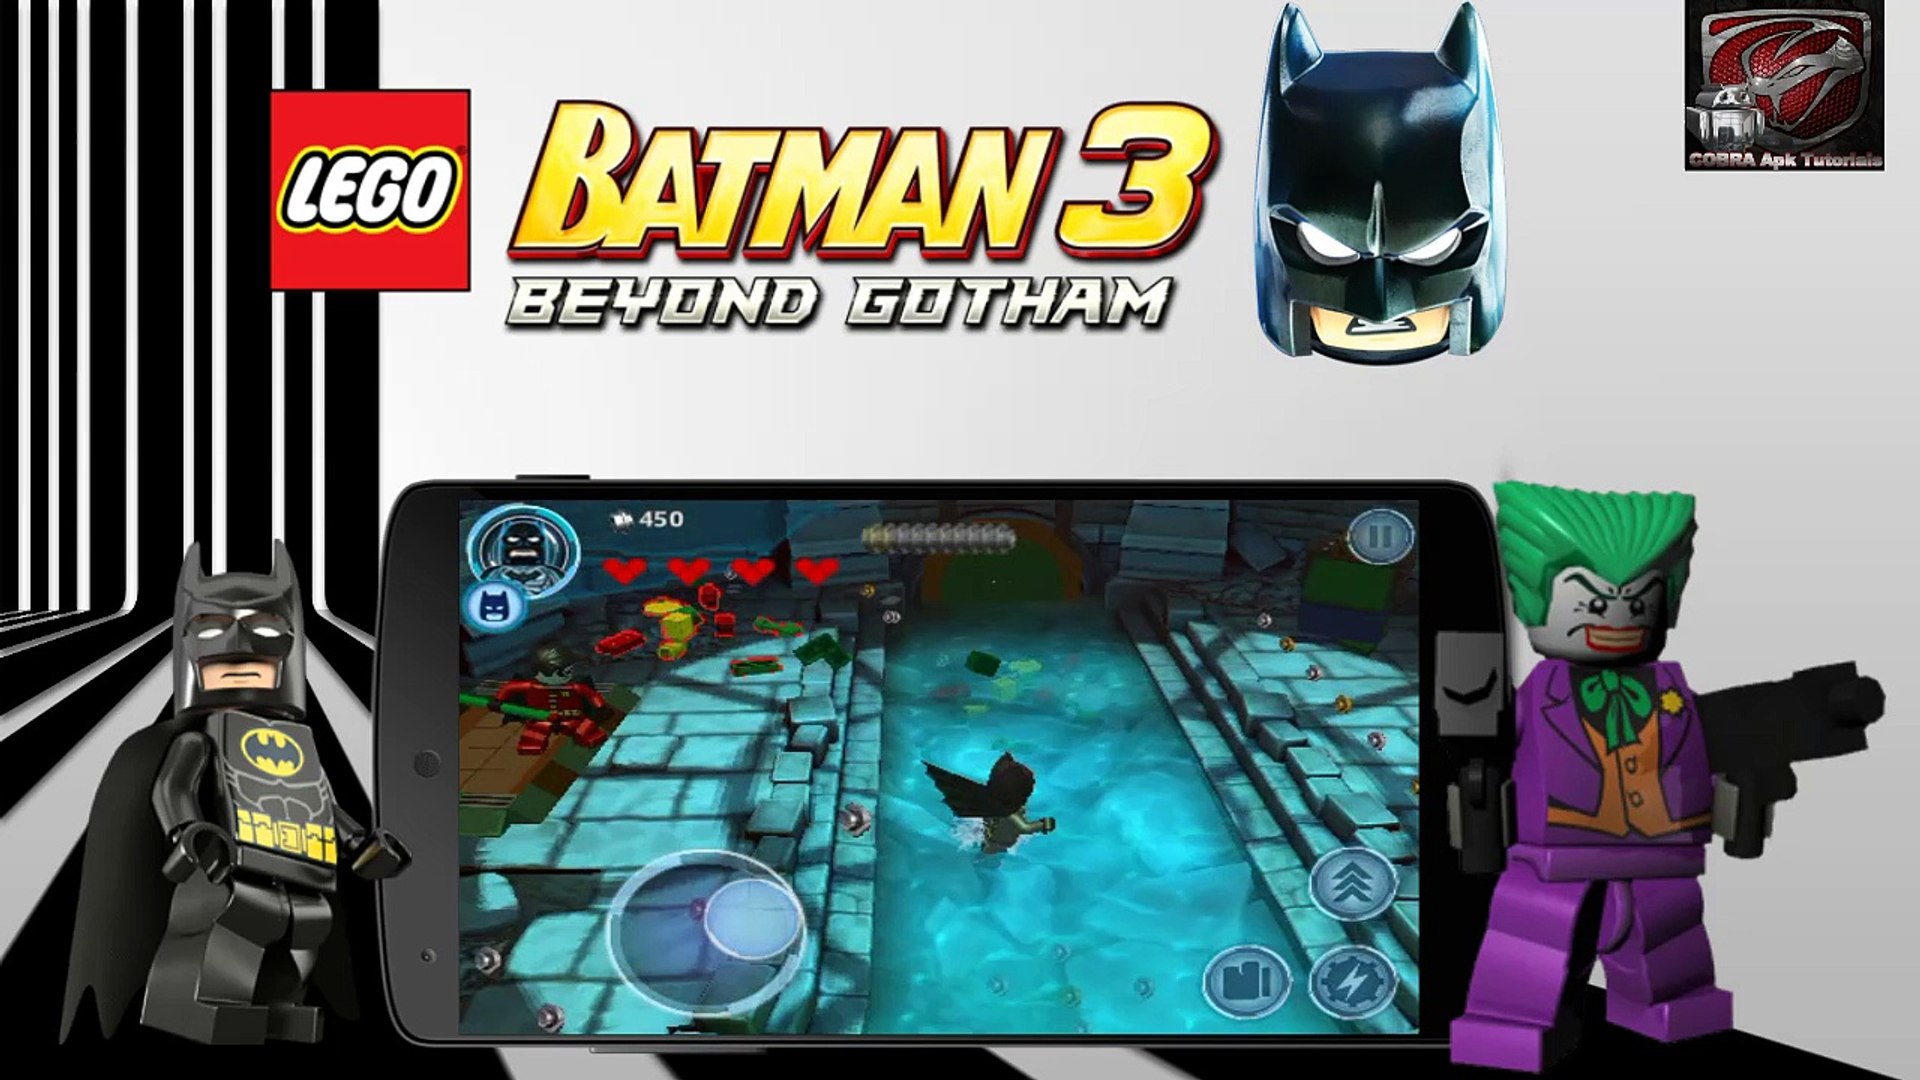 LEGO Batman Beyond Gotham v1.03.1~4 APK Mod + GAMEPLAY HD - video  Dailymotion